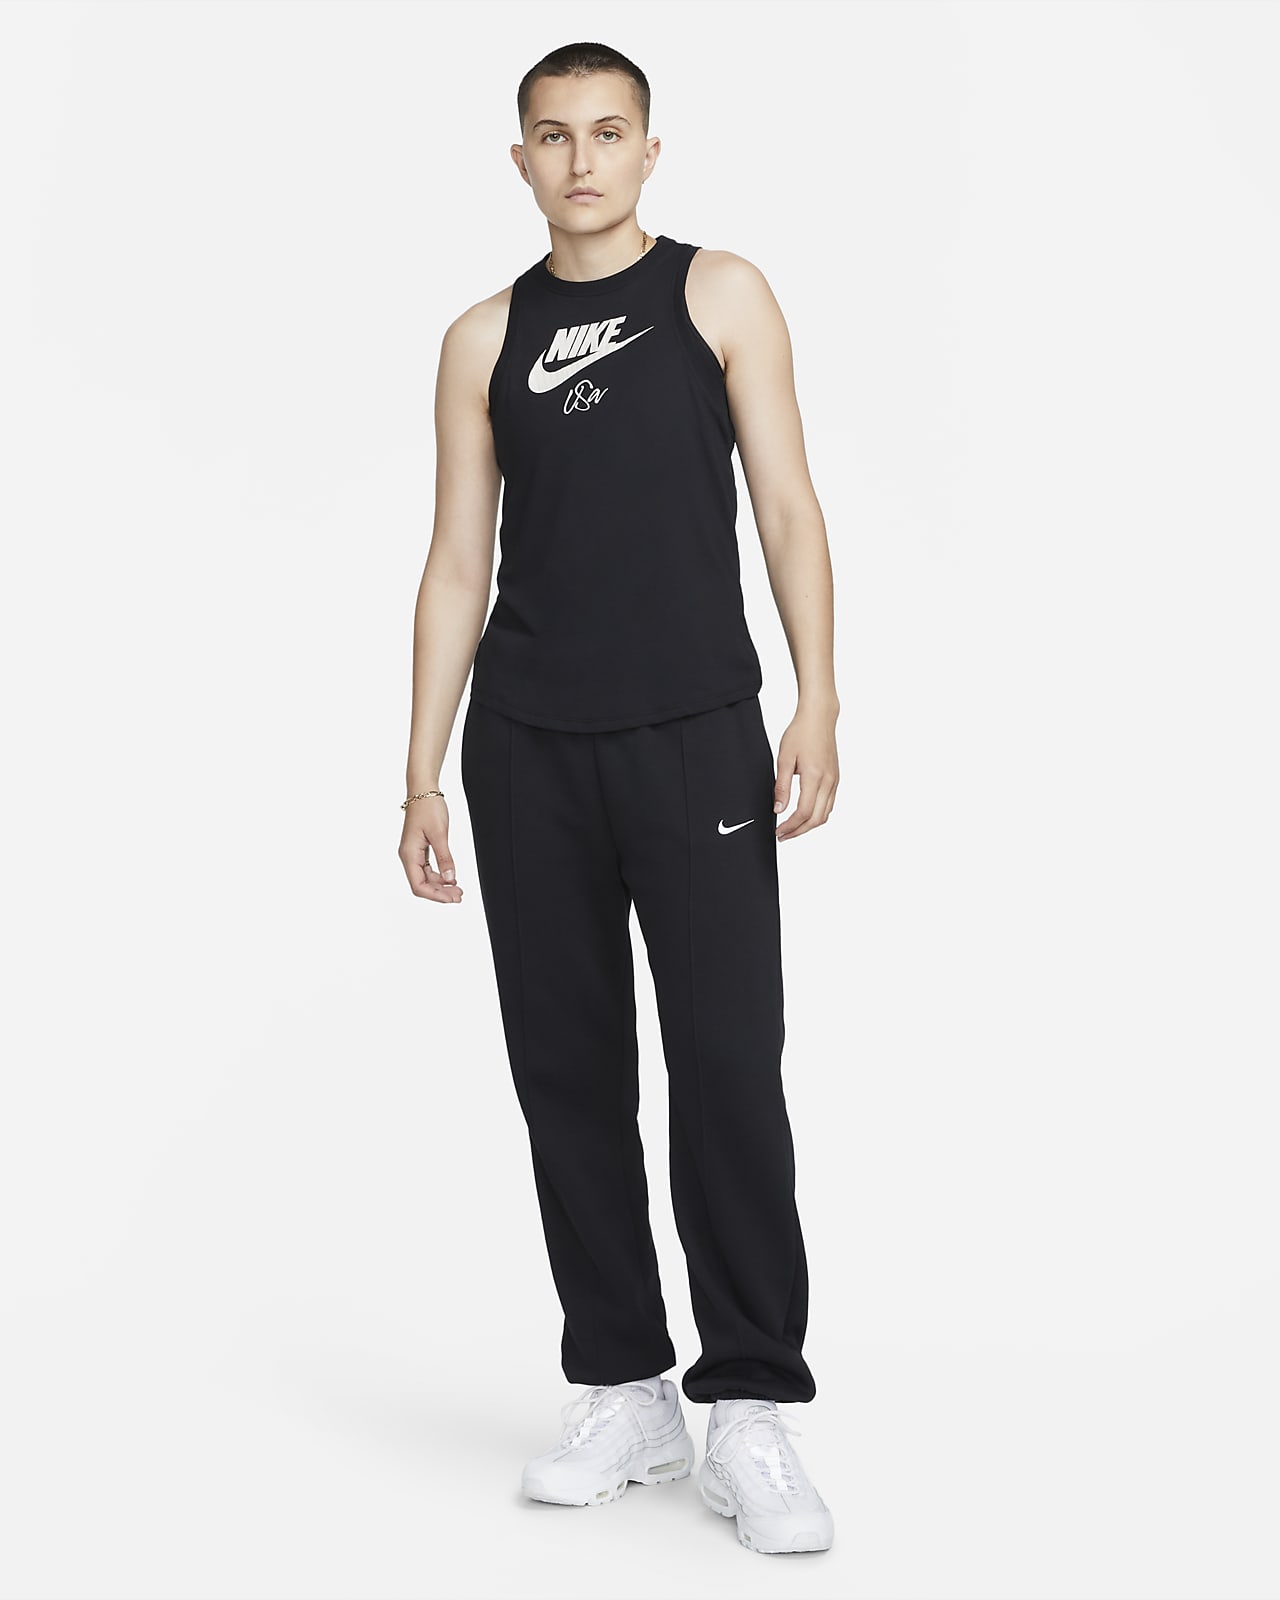 Nike Dri Fit Neon Pink/ Blue Striped Workout Tank Top Women's Size Sma -  beyond exchange